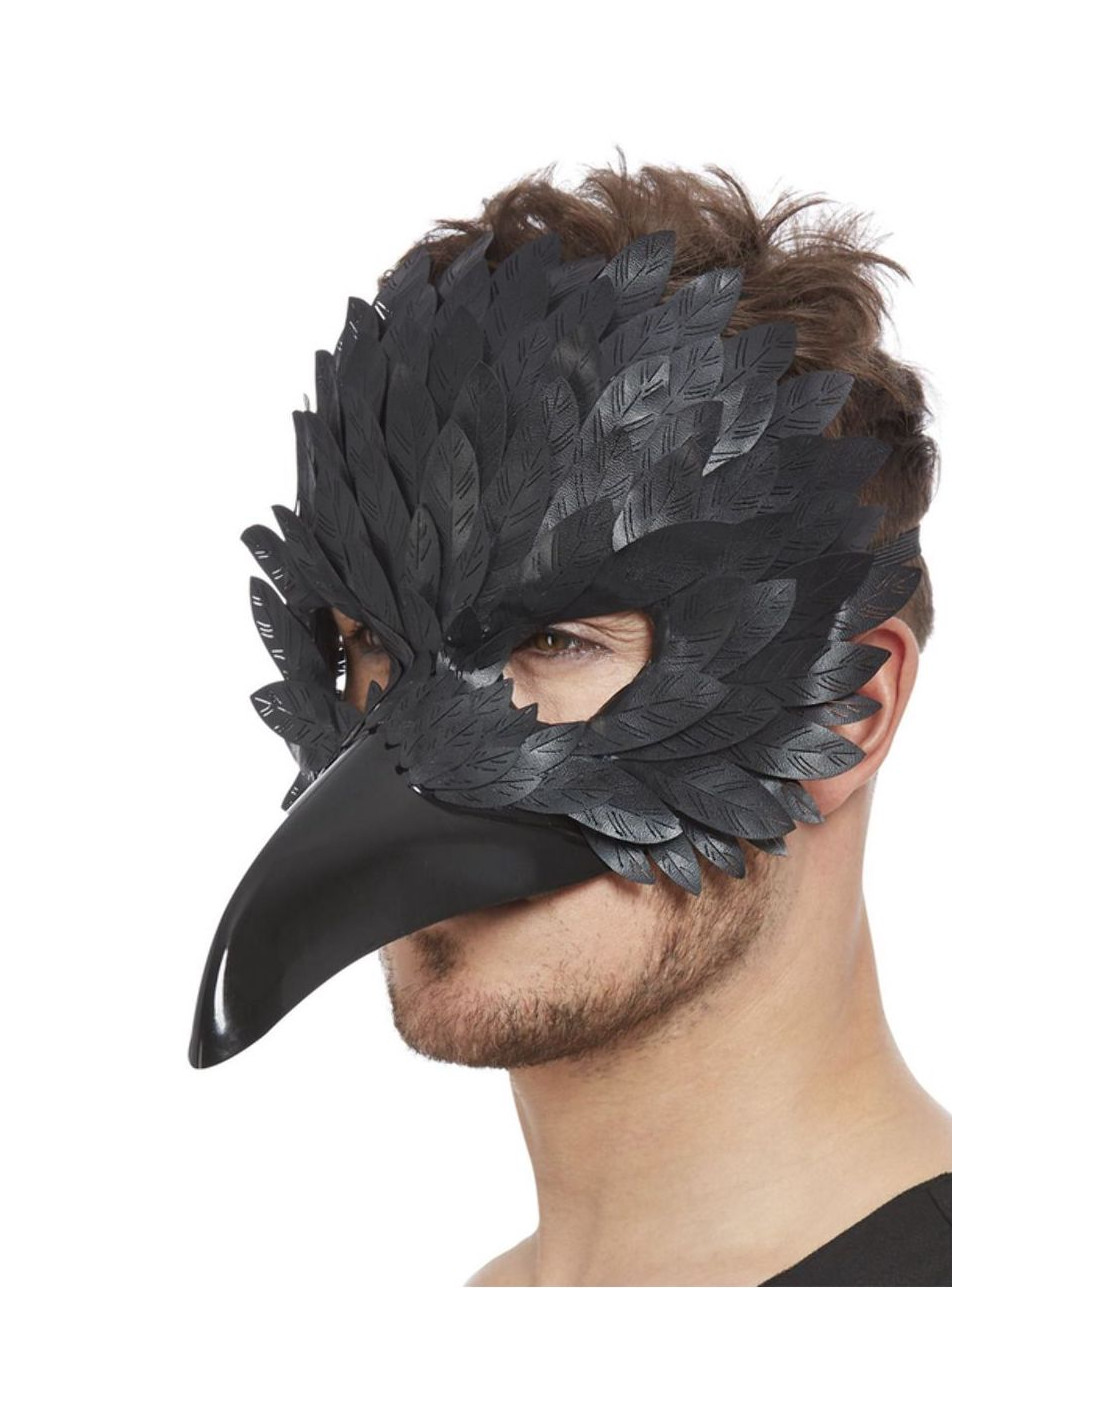 Маска bird. Маска ворона референс. Карнавальная маска ворона. Маска птицы карнавальная. Карнавальная маска ворон.